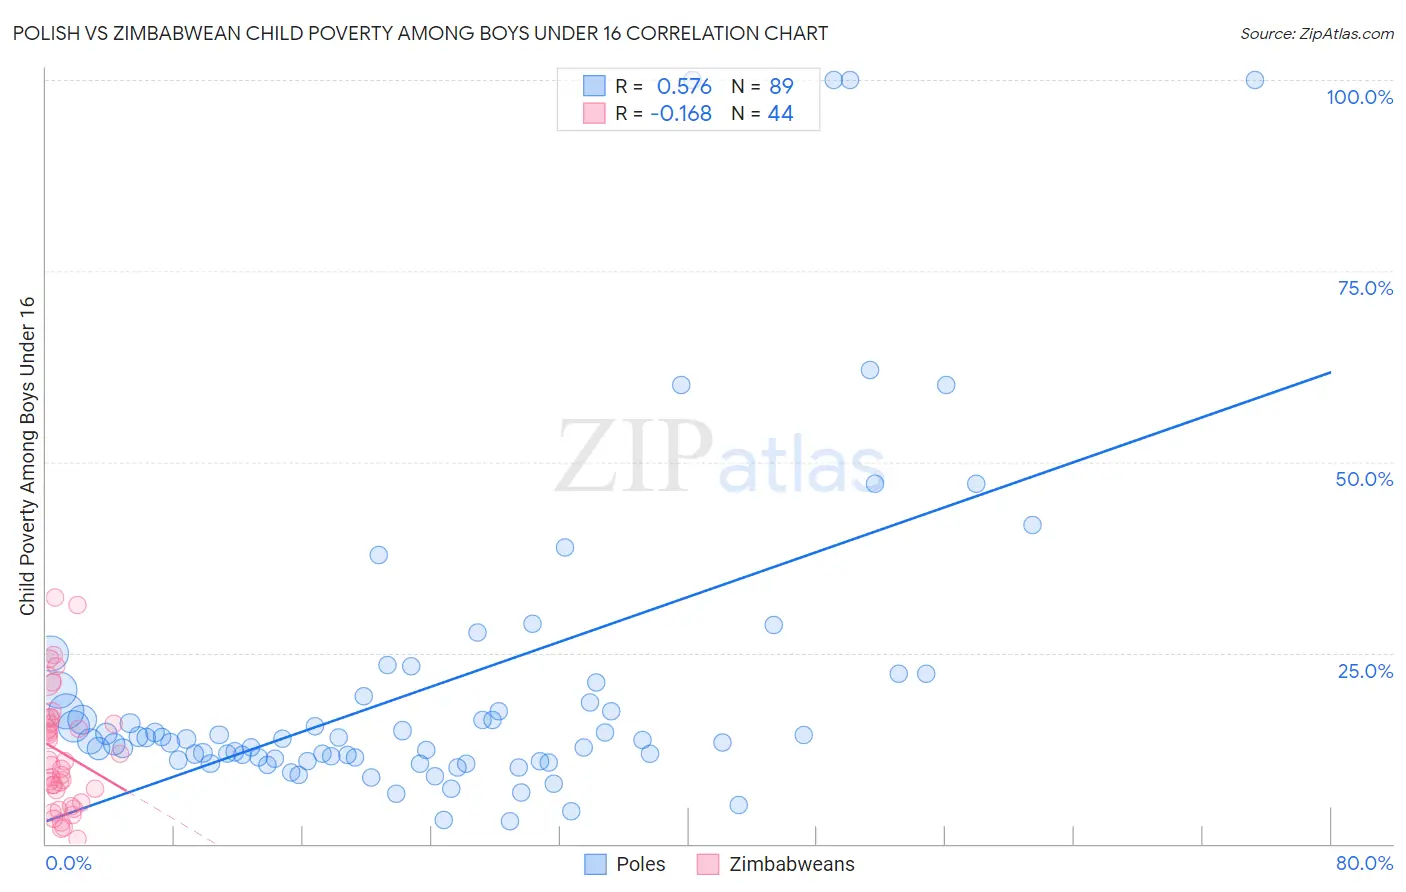 Polish vs Zimbabwean Child Poverty Among Boys Under 16